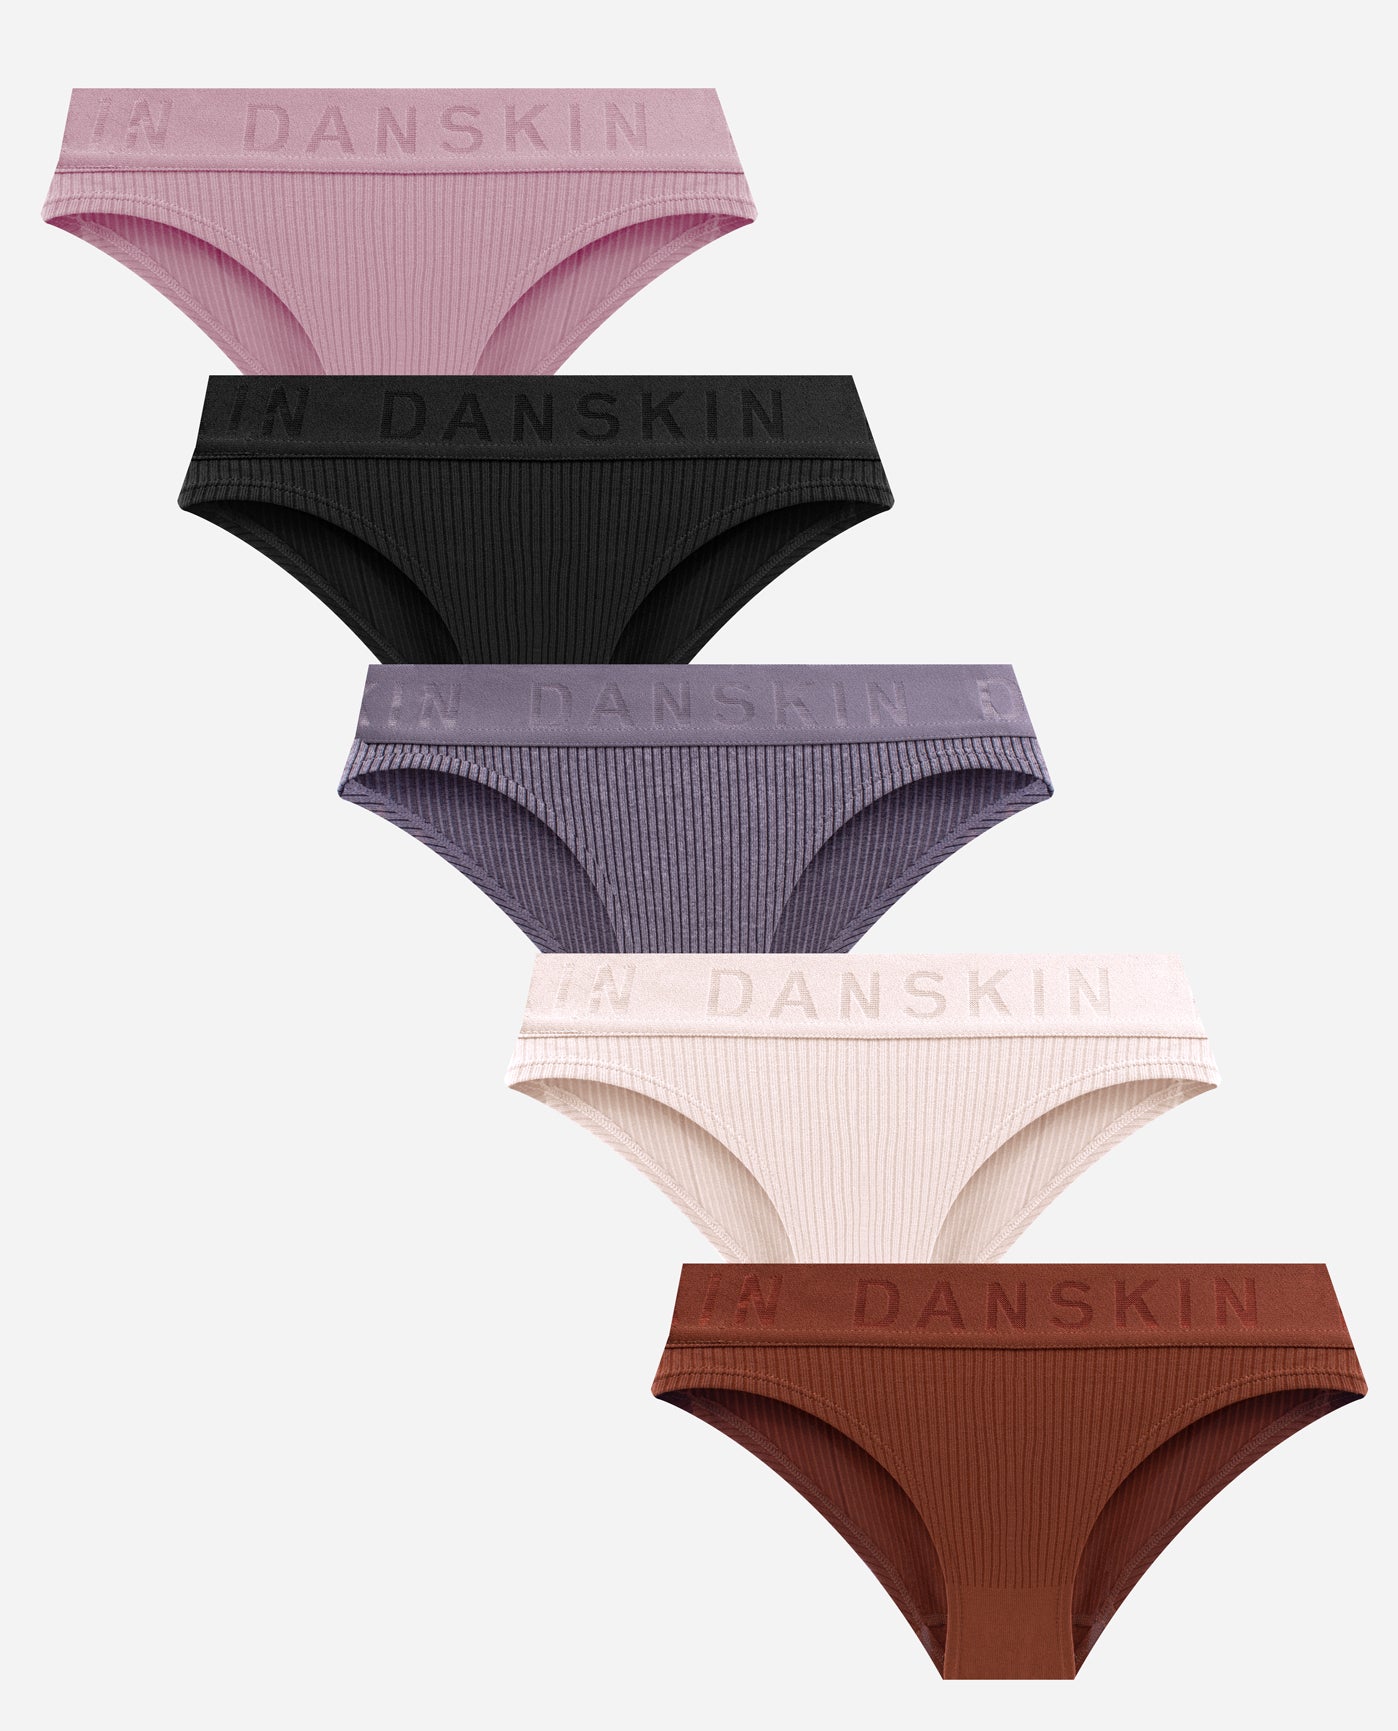  Danskin Underwear For Women